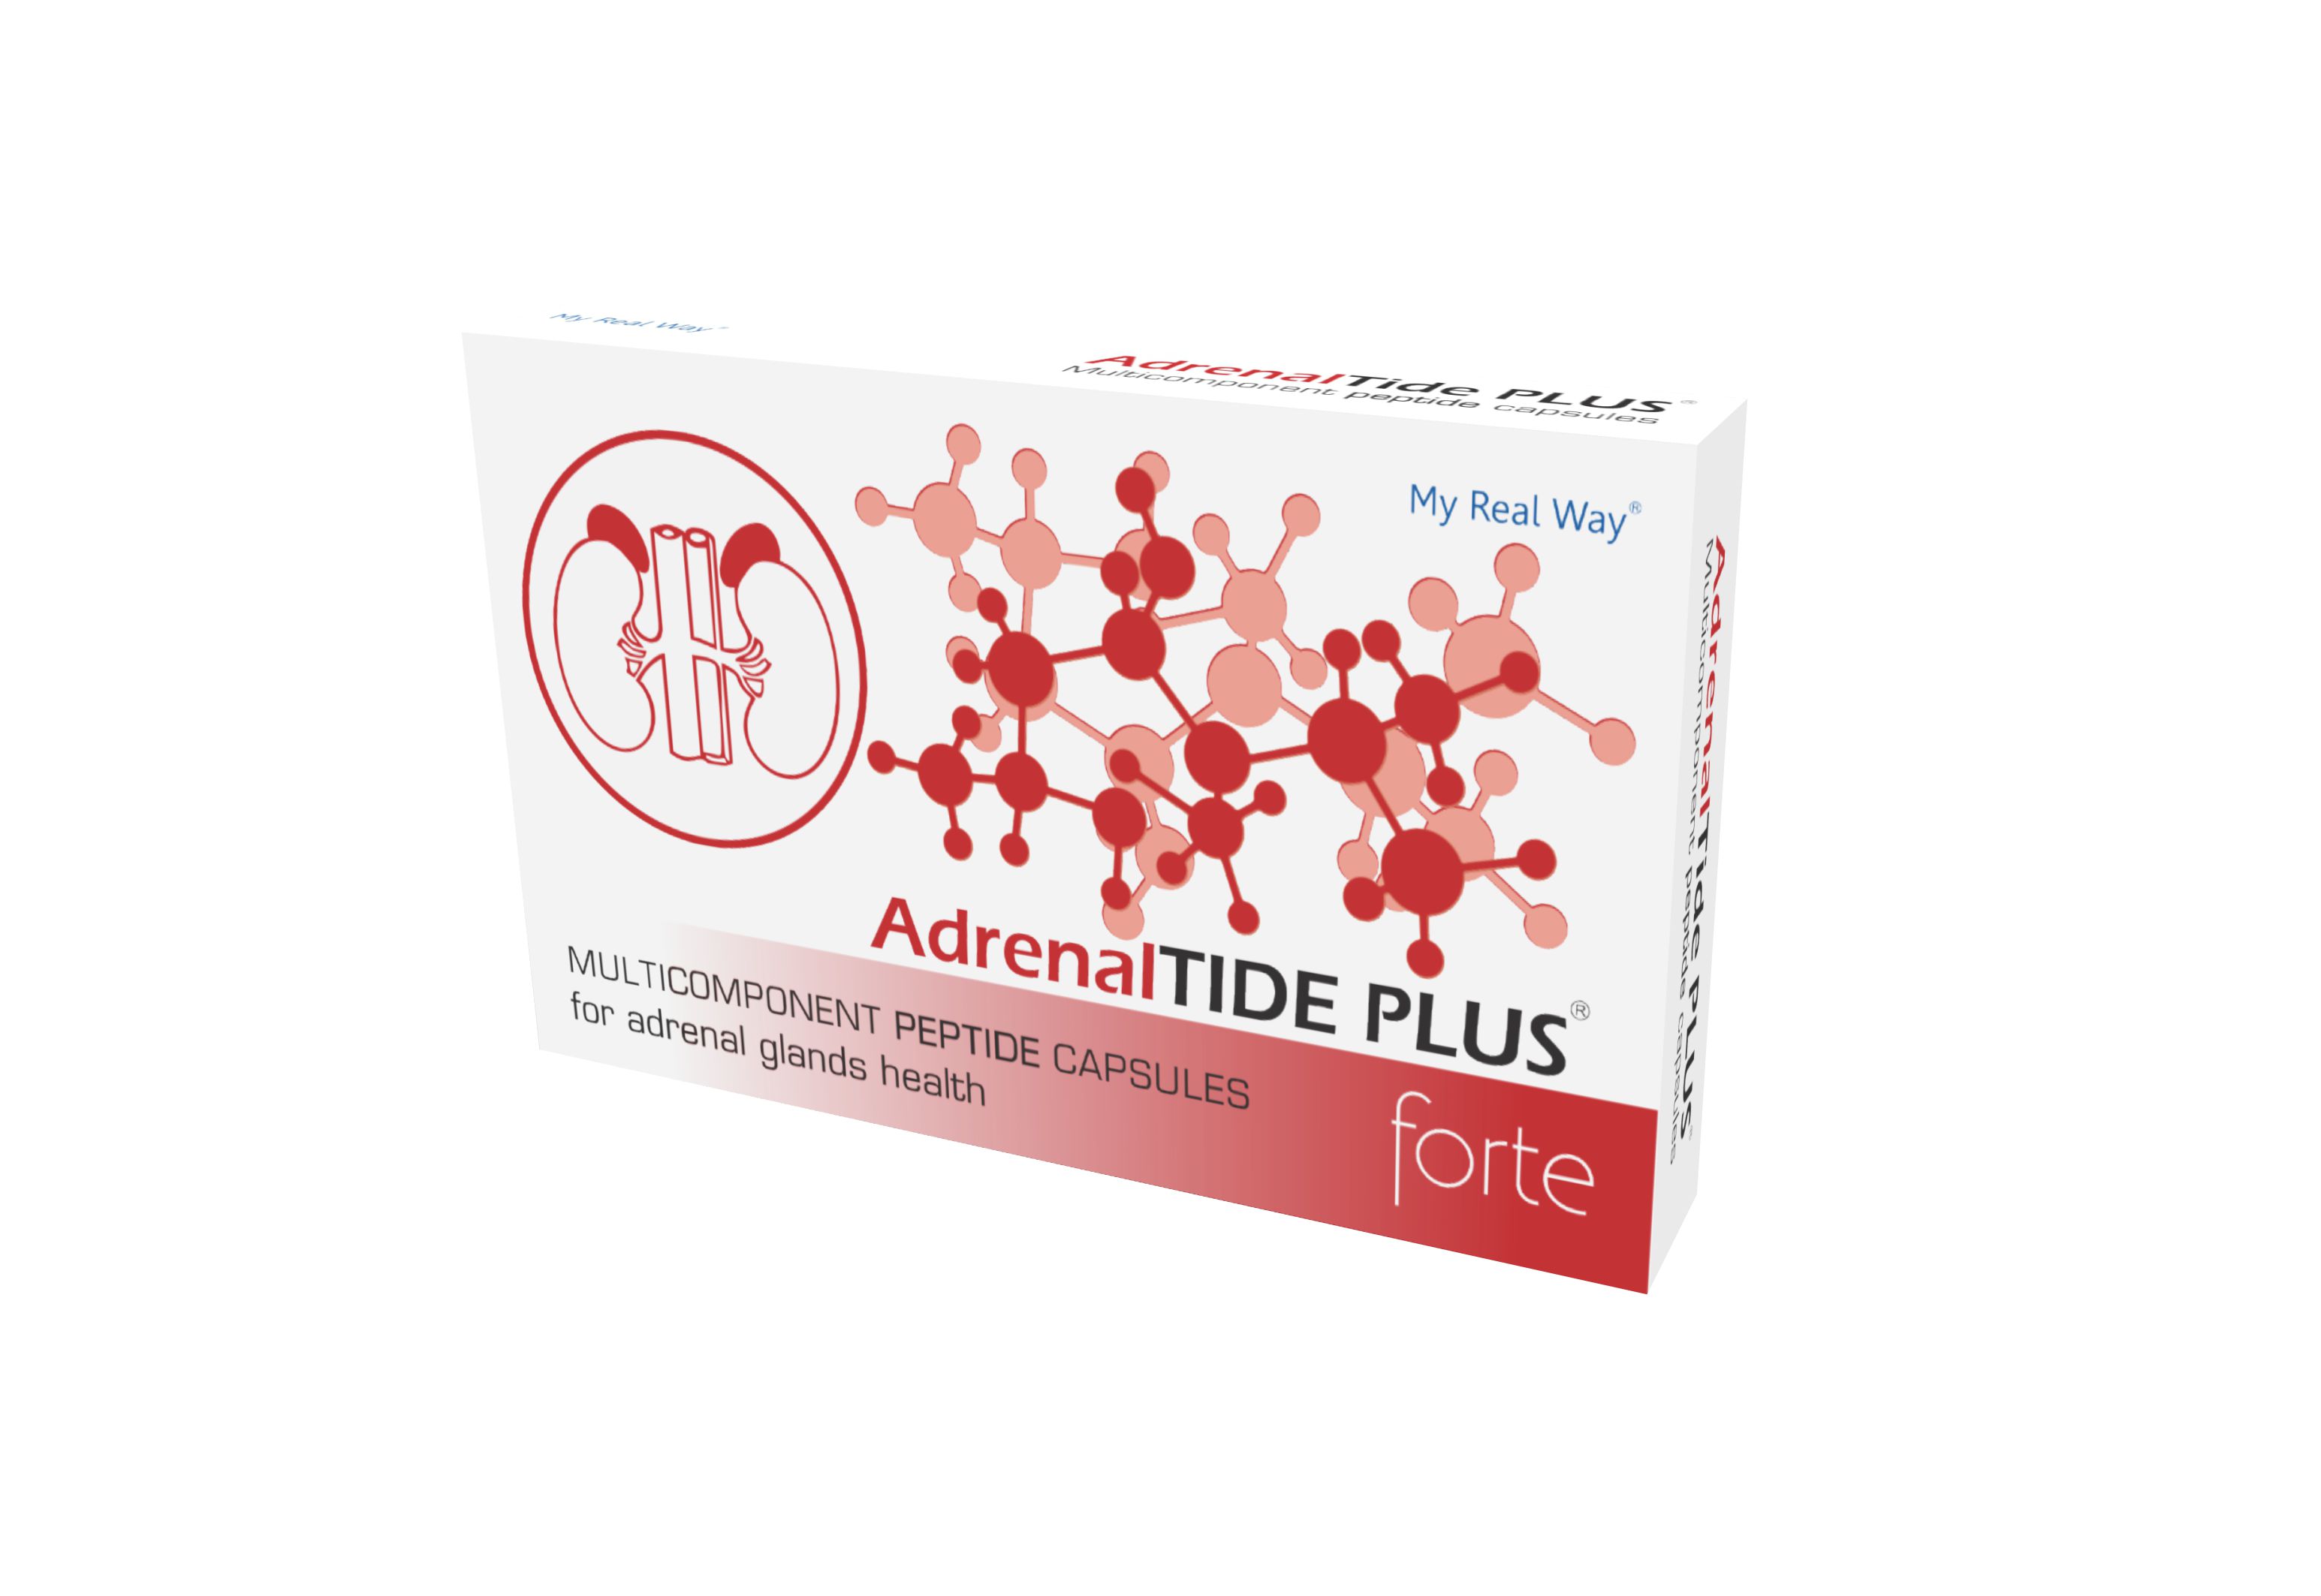 AdrenalTIDE PLUS forte peptides for adrenal glands